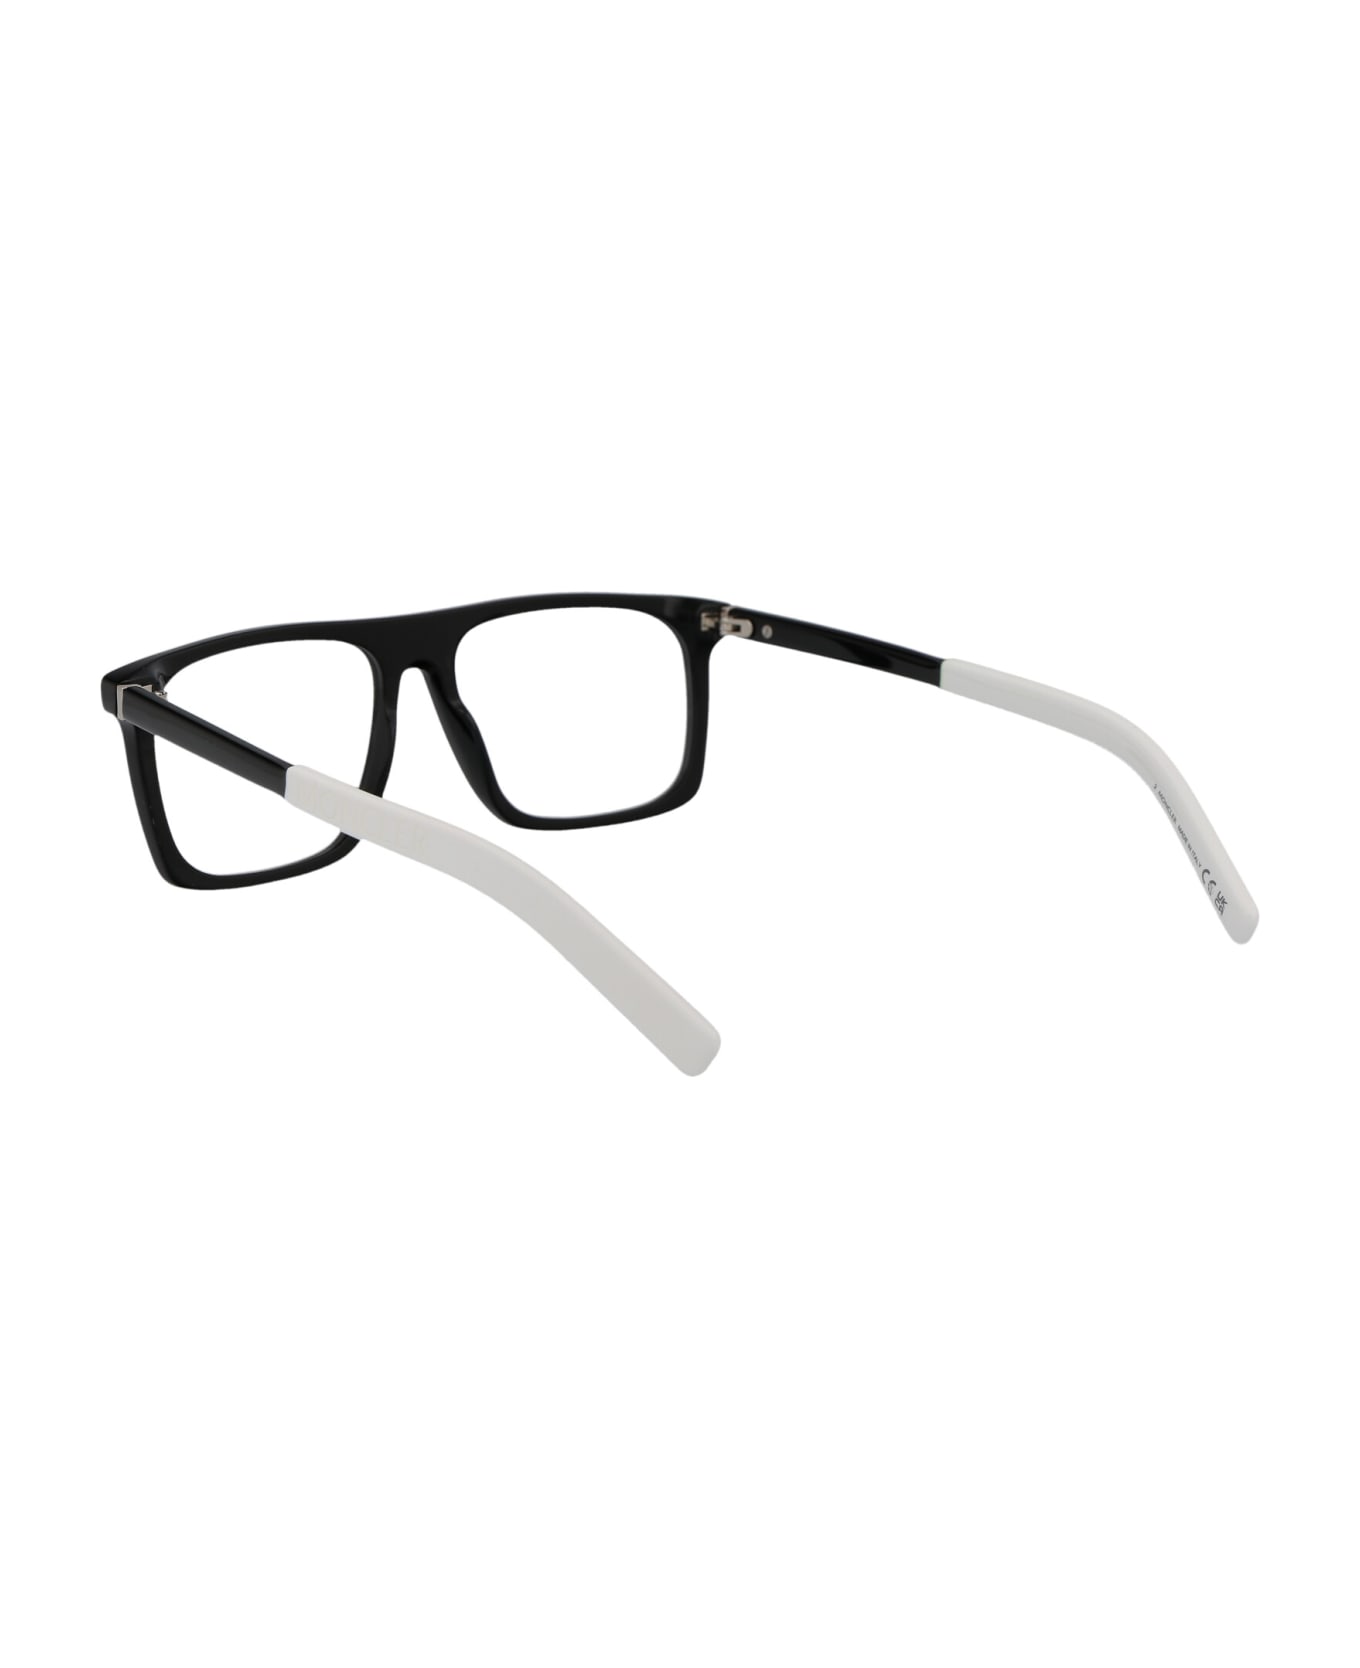 Moncler Eyewear Ml5206 Glasses - 001 Nero Lucido アイウェア